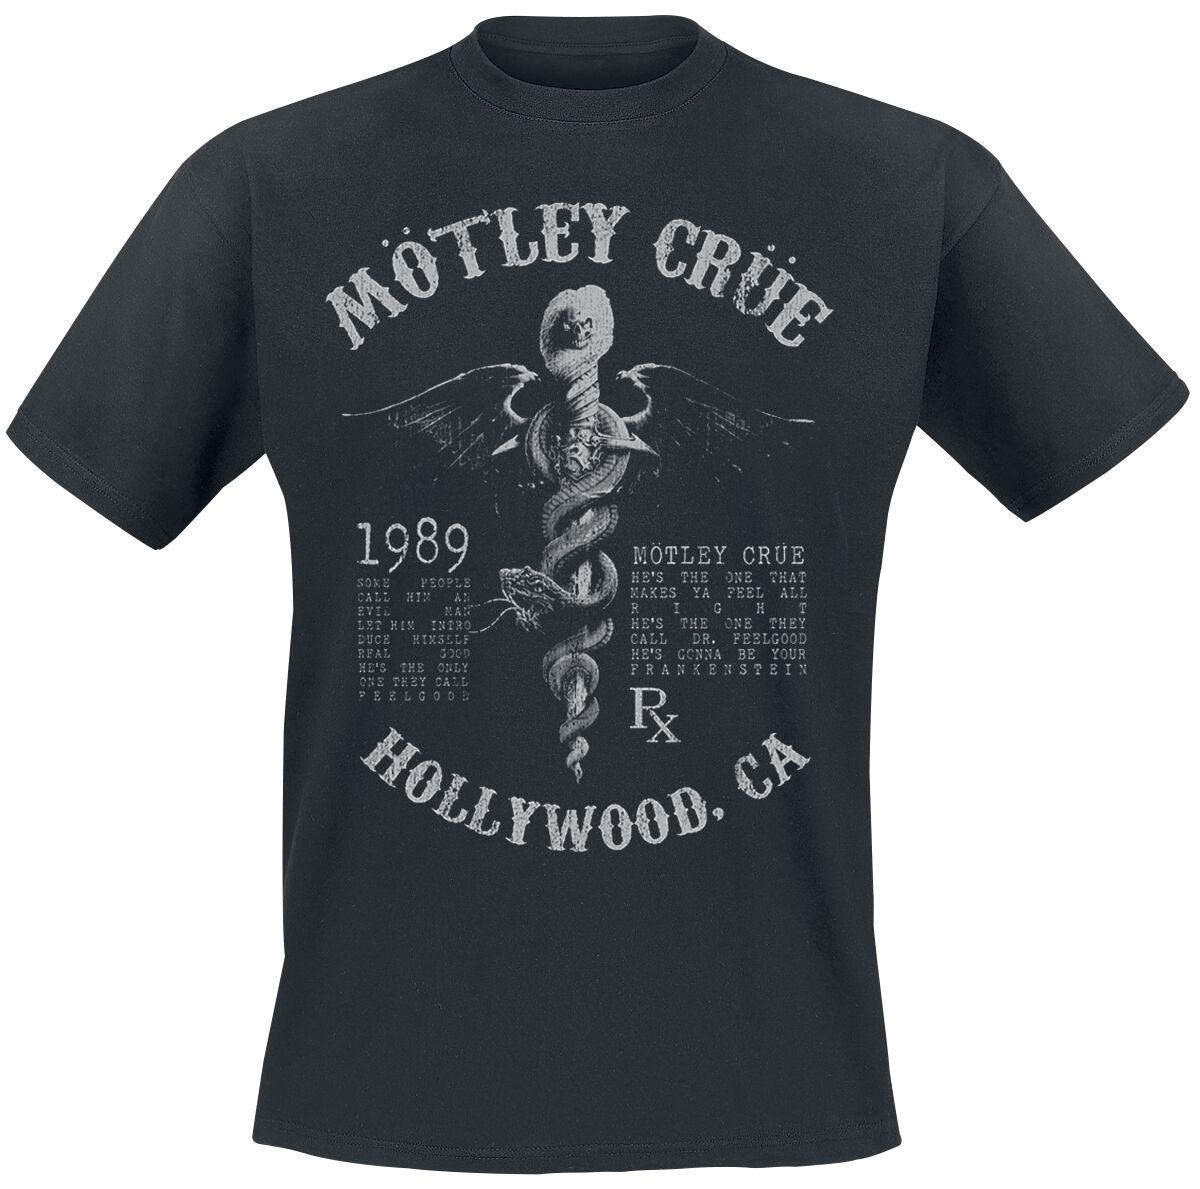 Mötley Crüe T-Shirt - Faded Feel Good Lyrics - S bis XXL - für Männer - Größe L - schwarz  - Lizenziertes Merchandise!